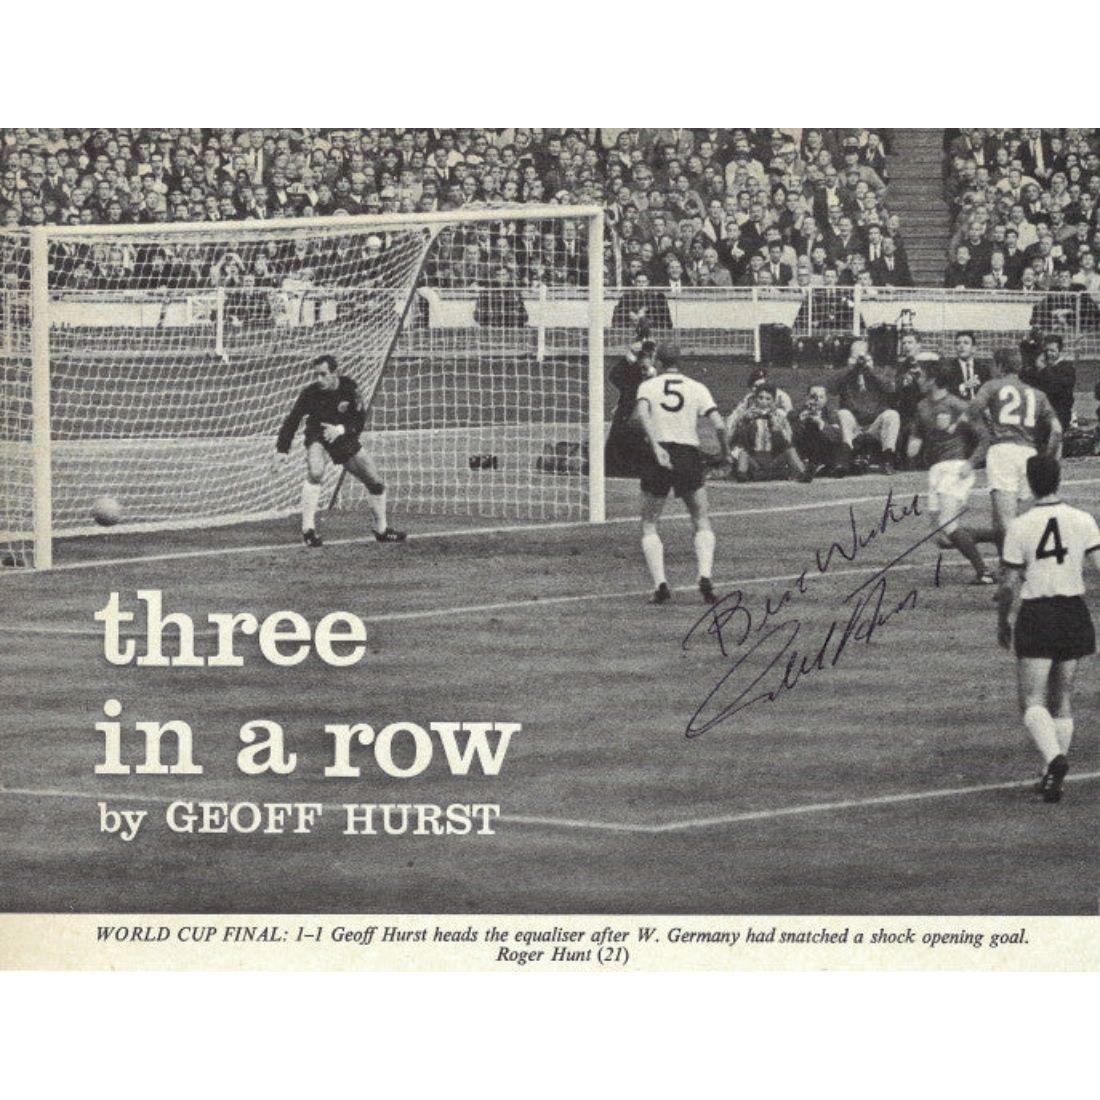 Eine Sammlung signierter Fotos der englischen Weltmeistermannschaft von 1966

Begleitet von zwei offiziellen Programmen für das Turnier
Am 30. Juli 1966 schlug England im Finale der Fußballweltmeisterschaft Westdeutschland mit 4:2. Bis heute ist